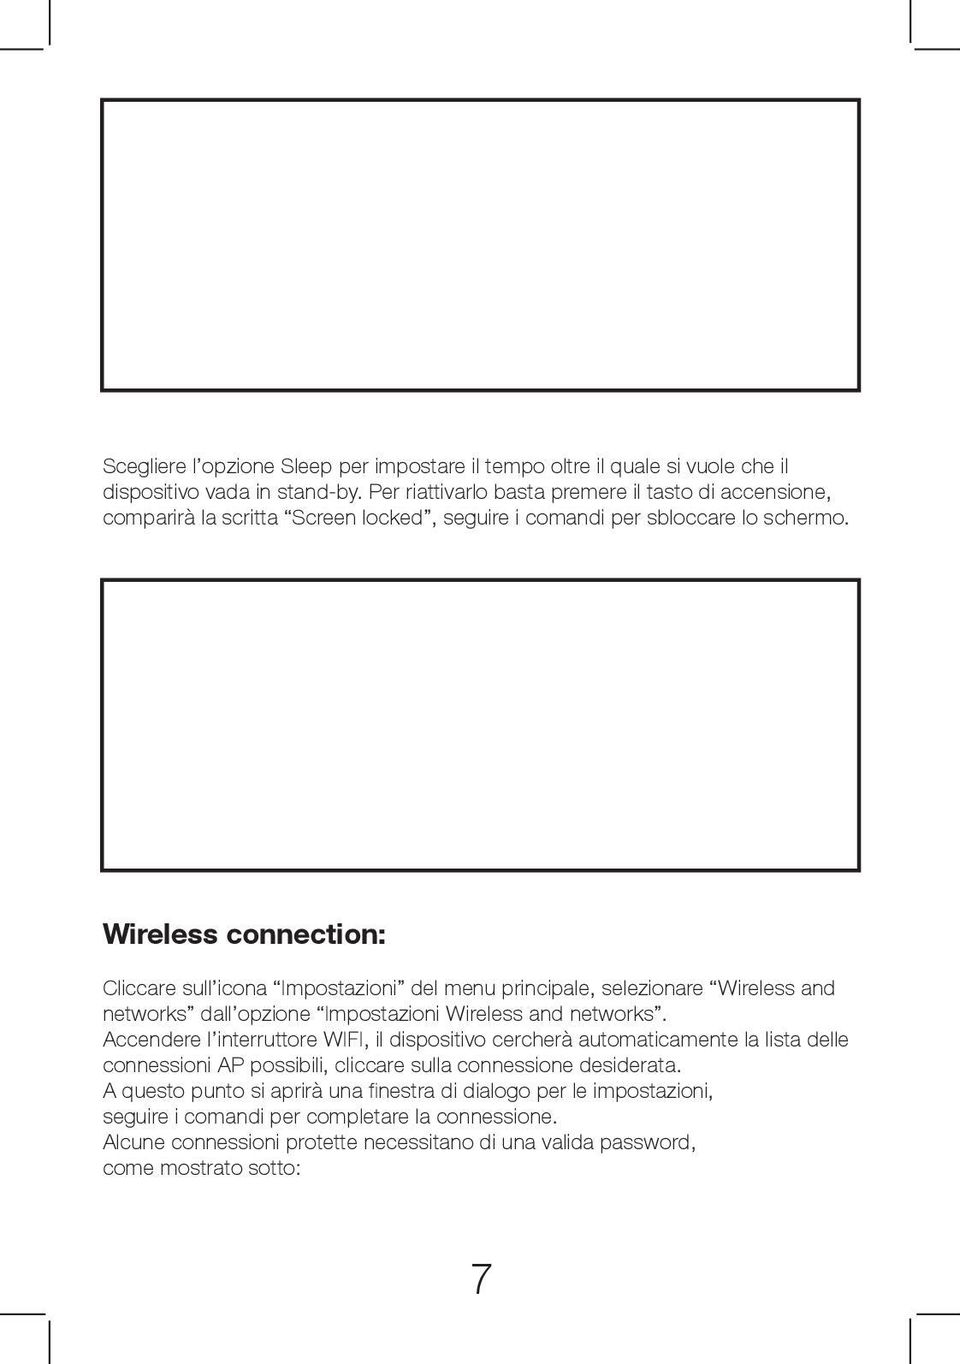 Wireless connection: Cliccare sull icona Impostazioni del menu principale, selezionare Wireless and networks dall opzione Impostazioni Wireless and networks.